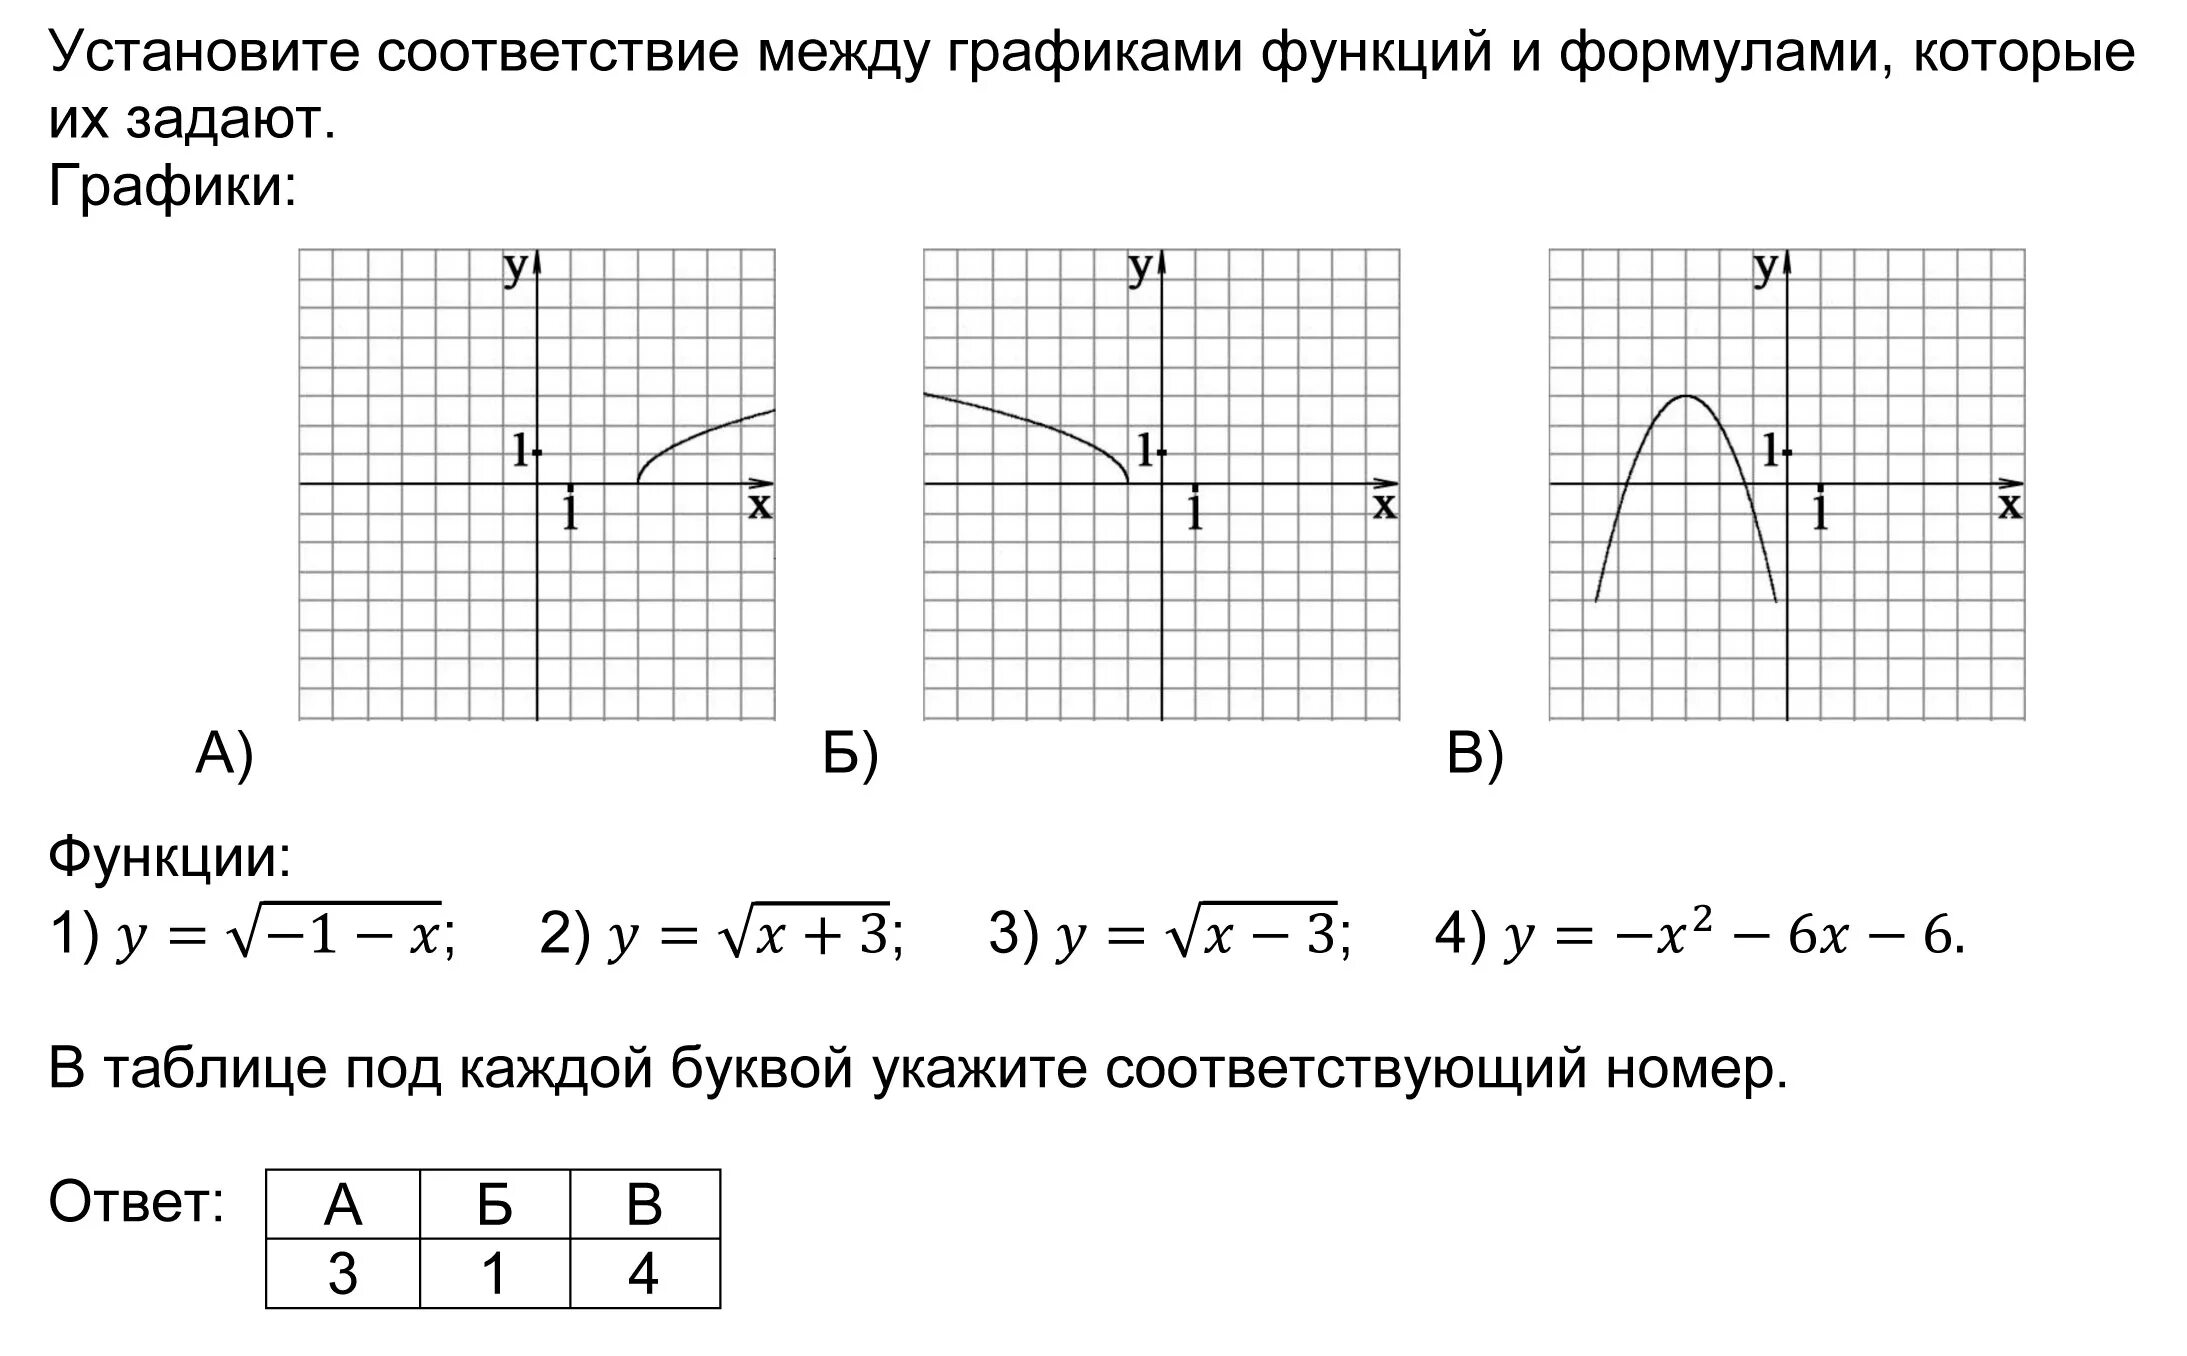 Установить соответствие графиков. Установите соответствие между графиками функций и формулами которые. Соответствие между графиками функций и их формулам. Графики функций. Соответствие между функциями и их графиками.